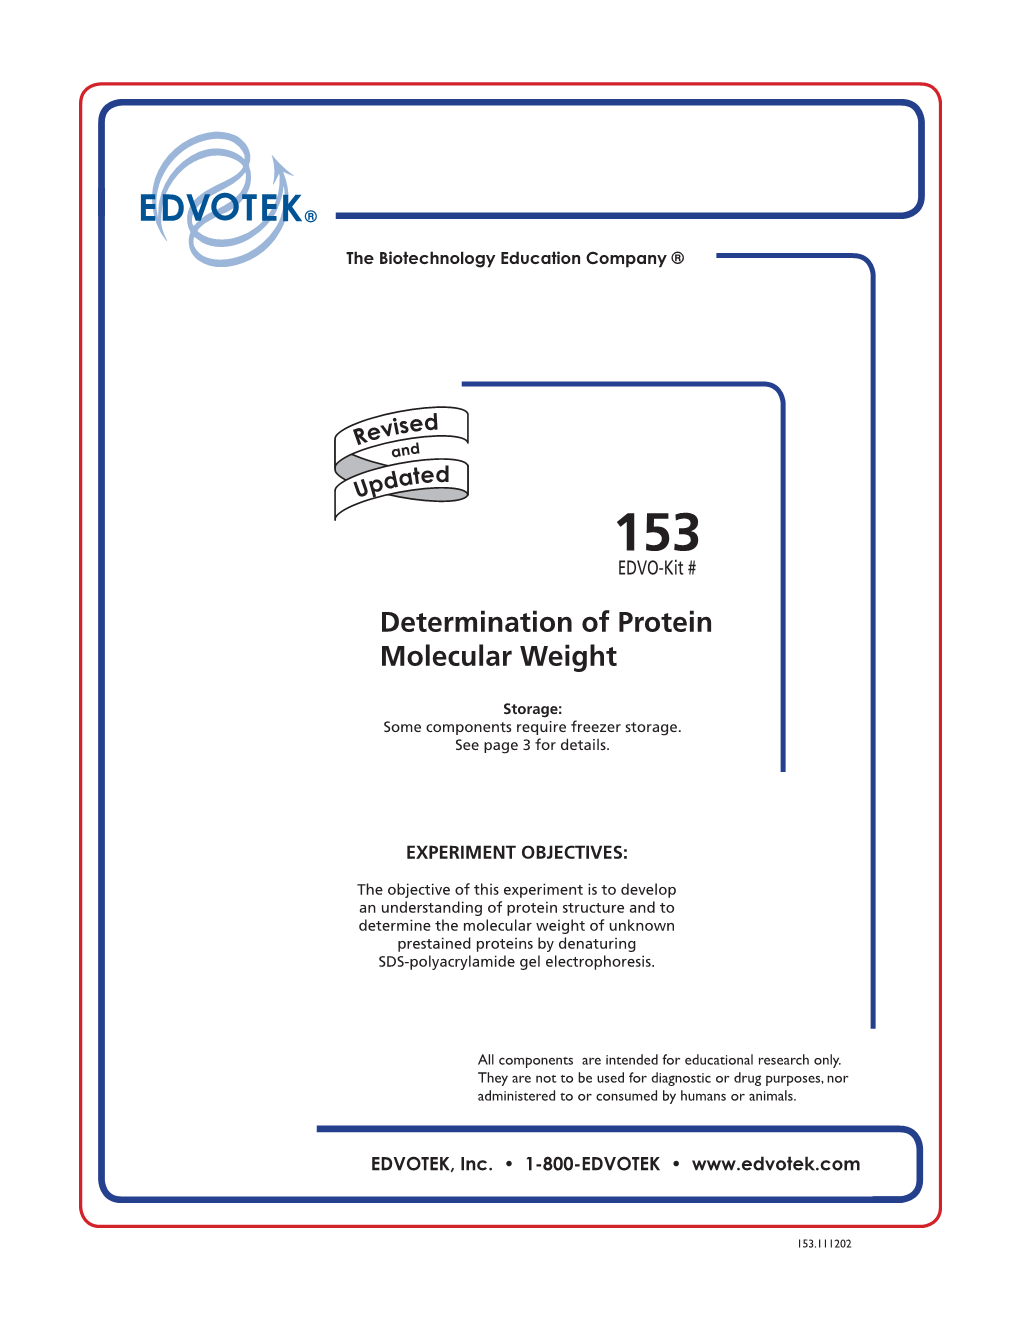 Determination of Protein Molecular Weight